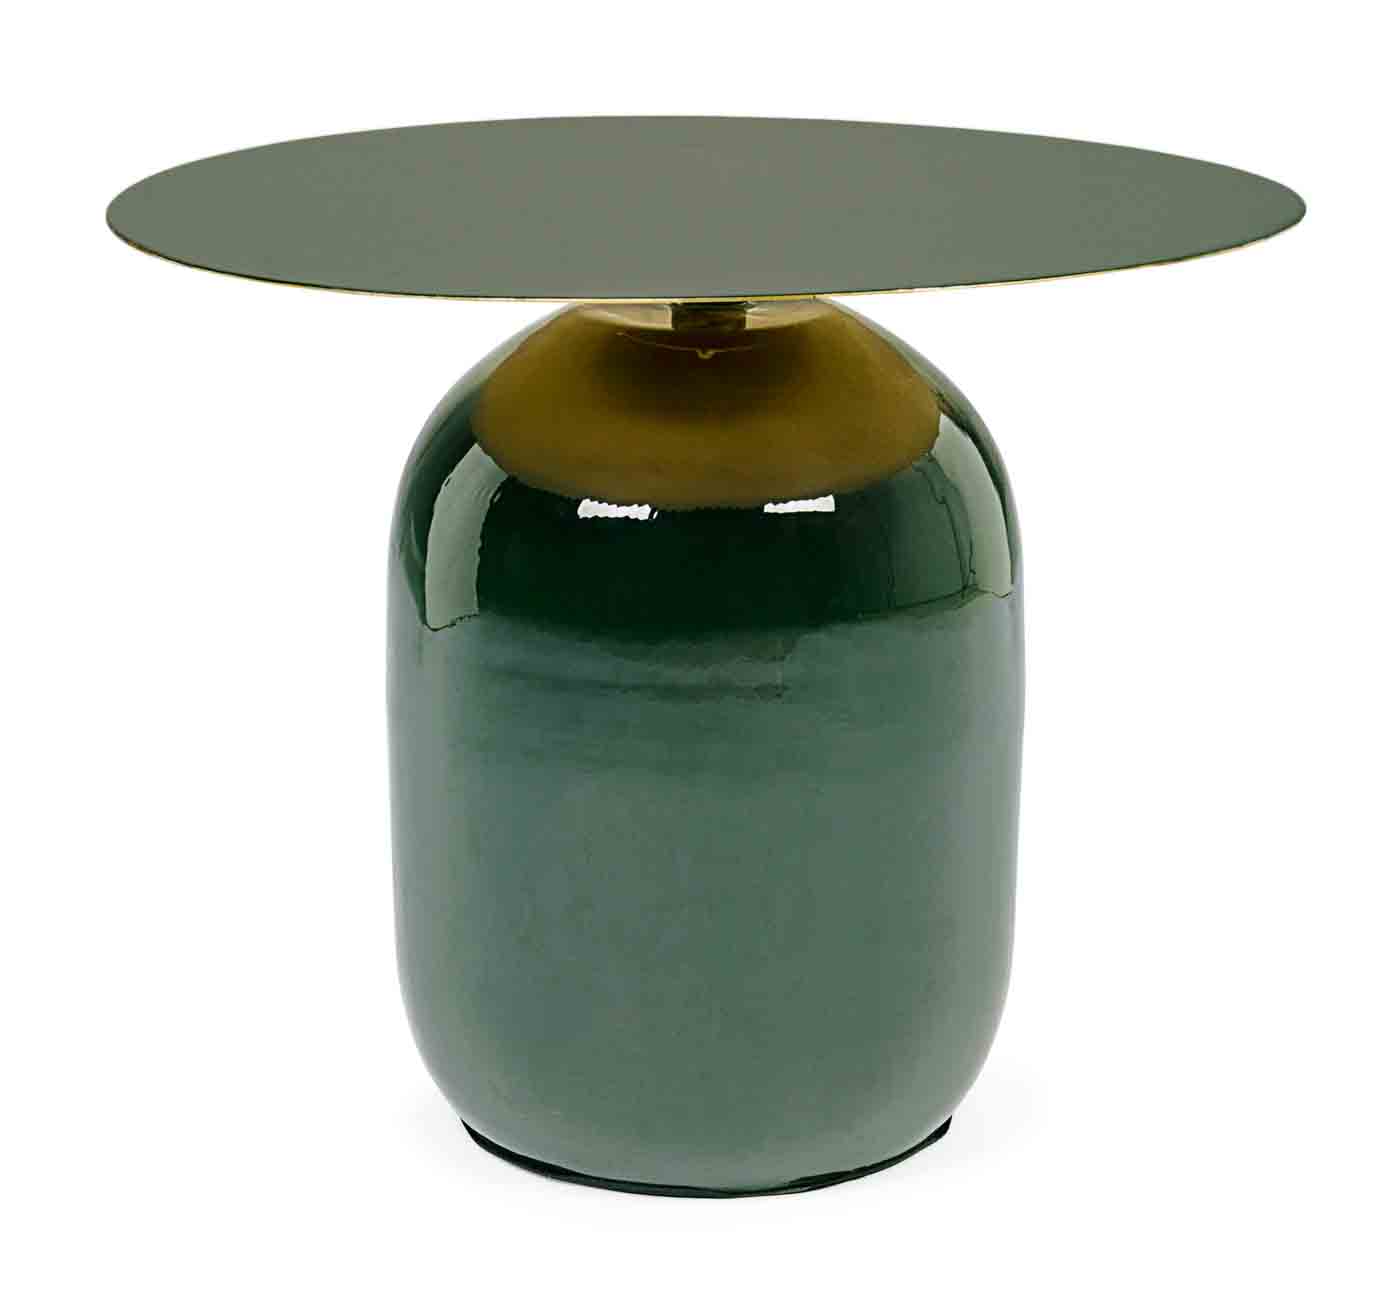 Der Beistelltisch Nalima wurde aus Metall gefertigt, welches eine Feinbearbeitung aus Lack erhalten hat. Zusätzlich verfügt der Tisch über vergoldete Bereiche, welche das moderne Design unterstreichen.